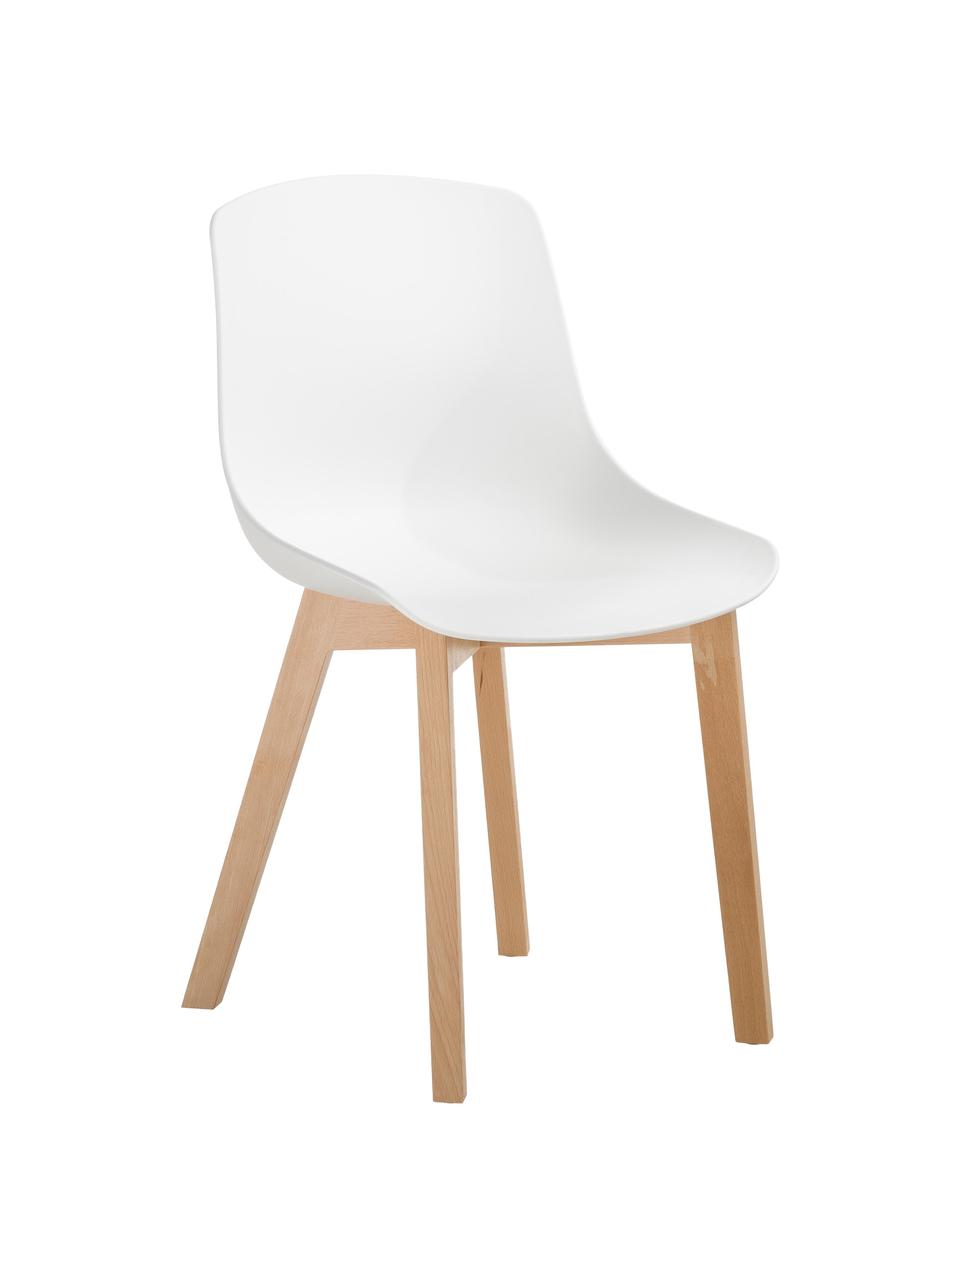 Kunststoffstühle Dave mit Holzbeinen, 2 Stück, Sitzschale: Kunststoff, Beine: Buchenholz, Weiß, Buchenholz, B 46 x T 52 cm